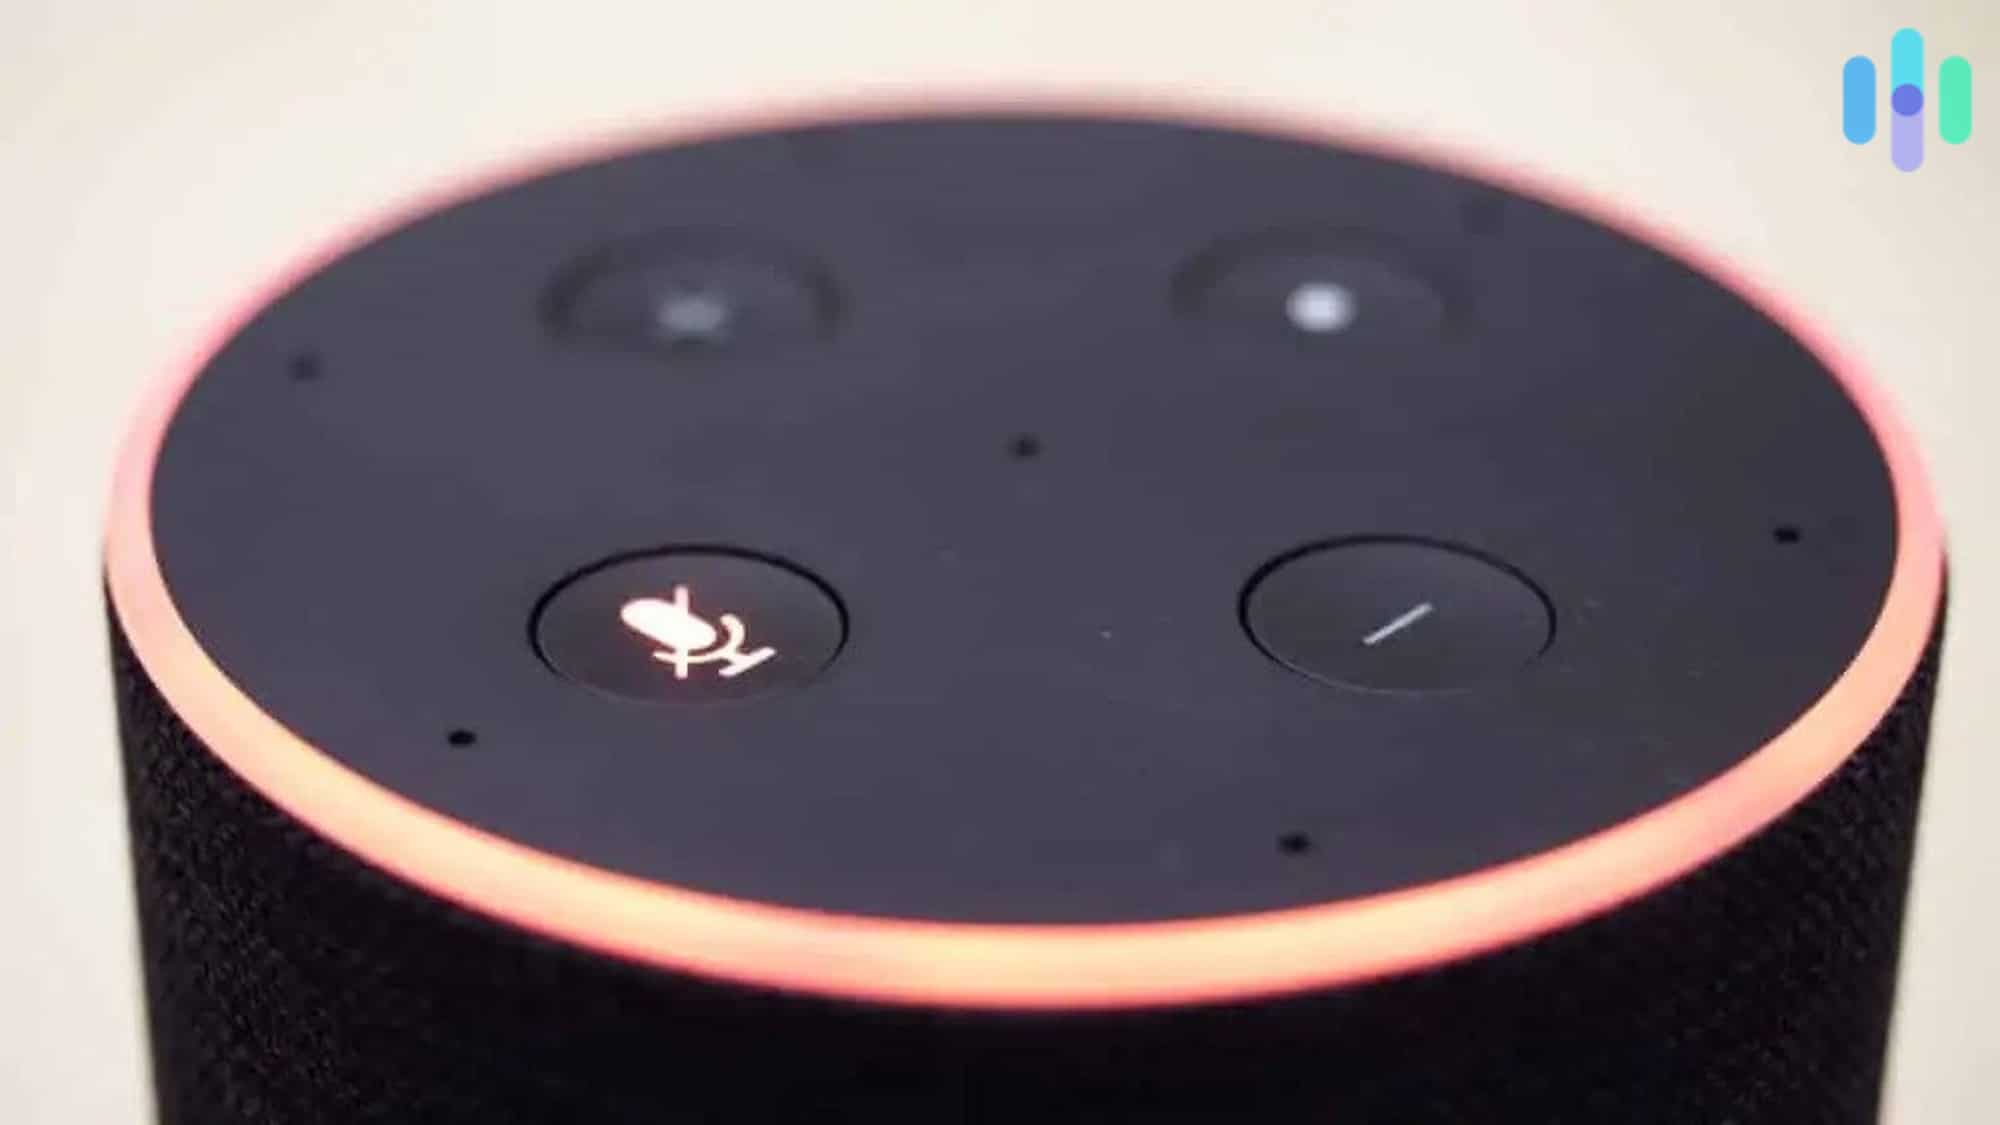 Amazon Alexa with volume button illuminated.